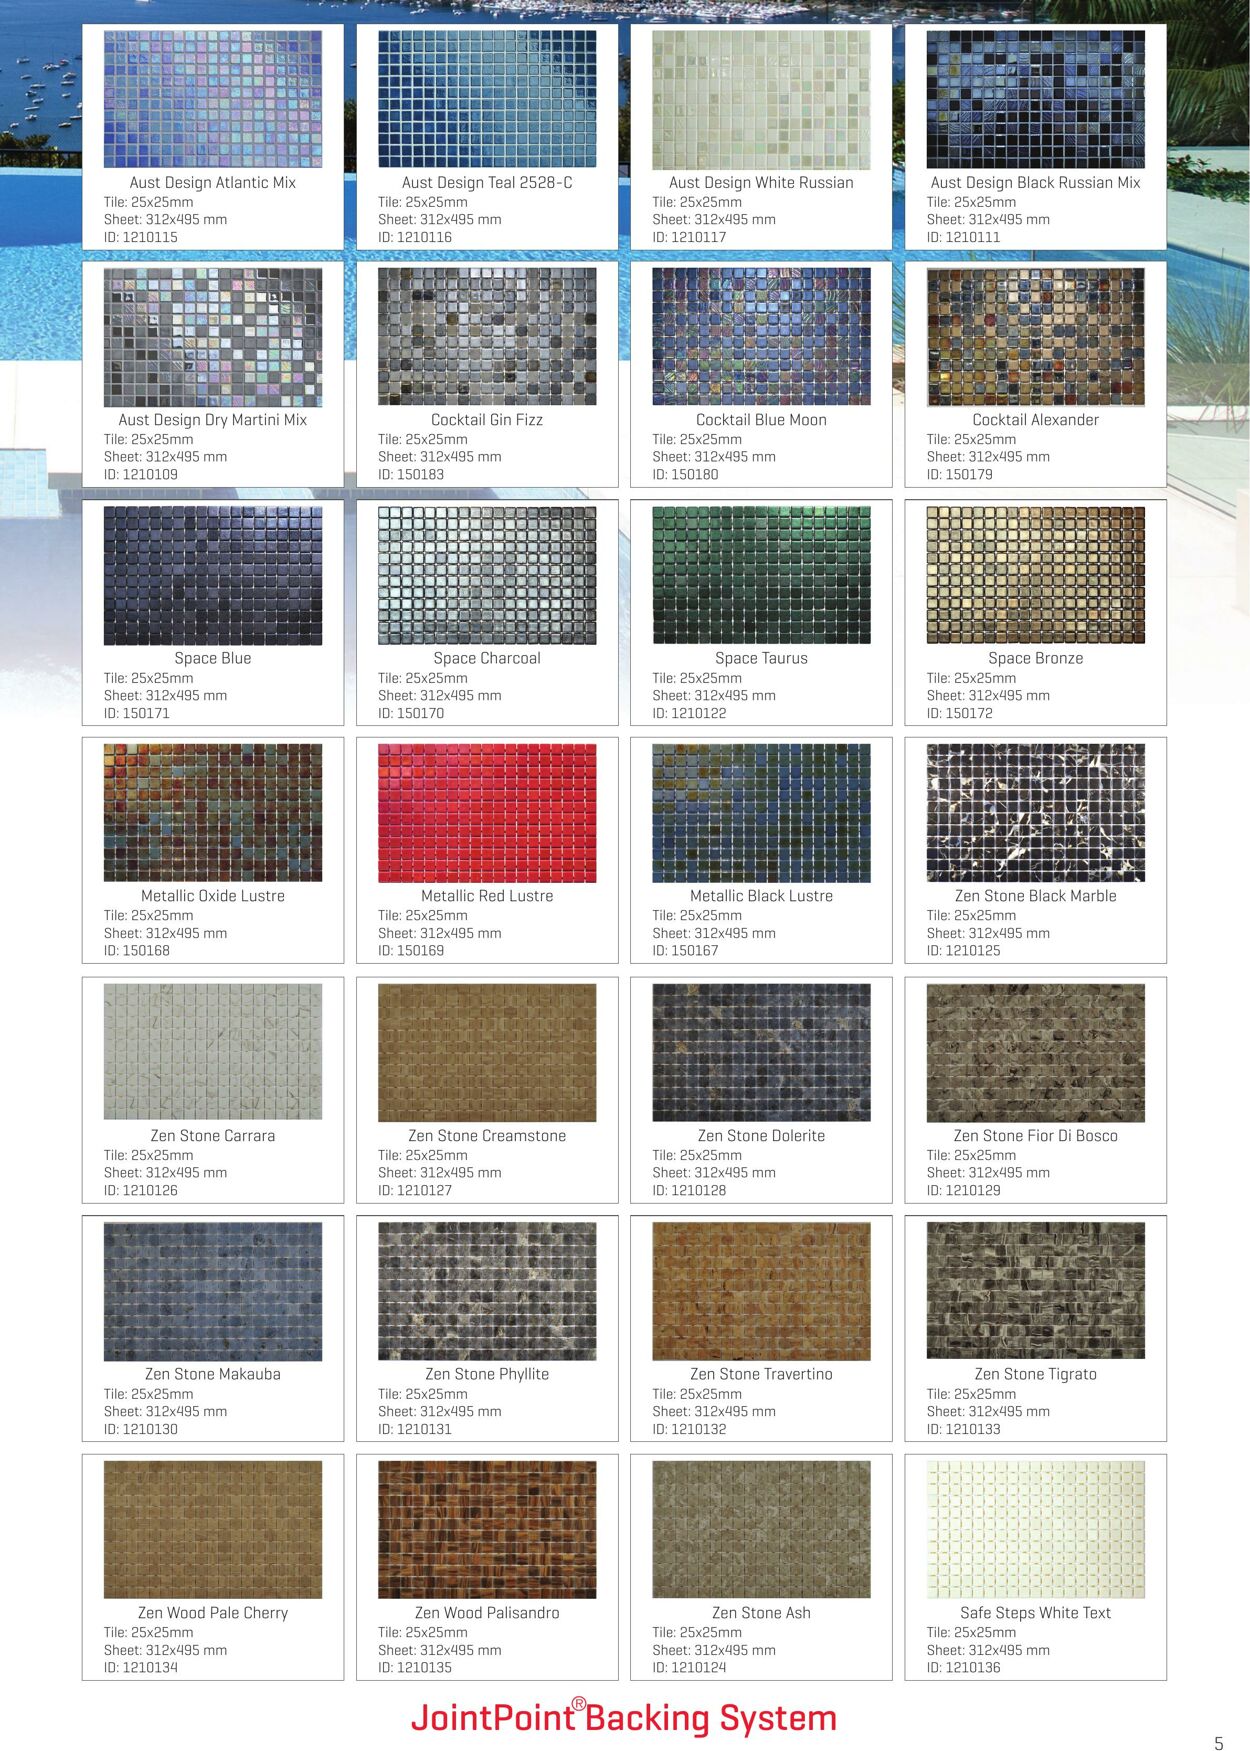 Catalogue Beaumont Tiles 01.07.2022 - 31.12.2022